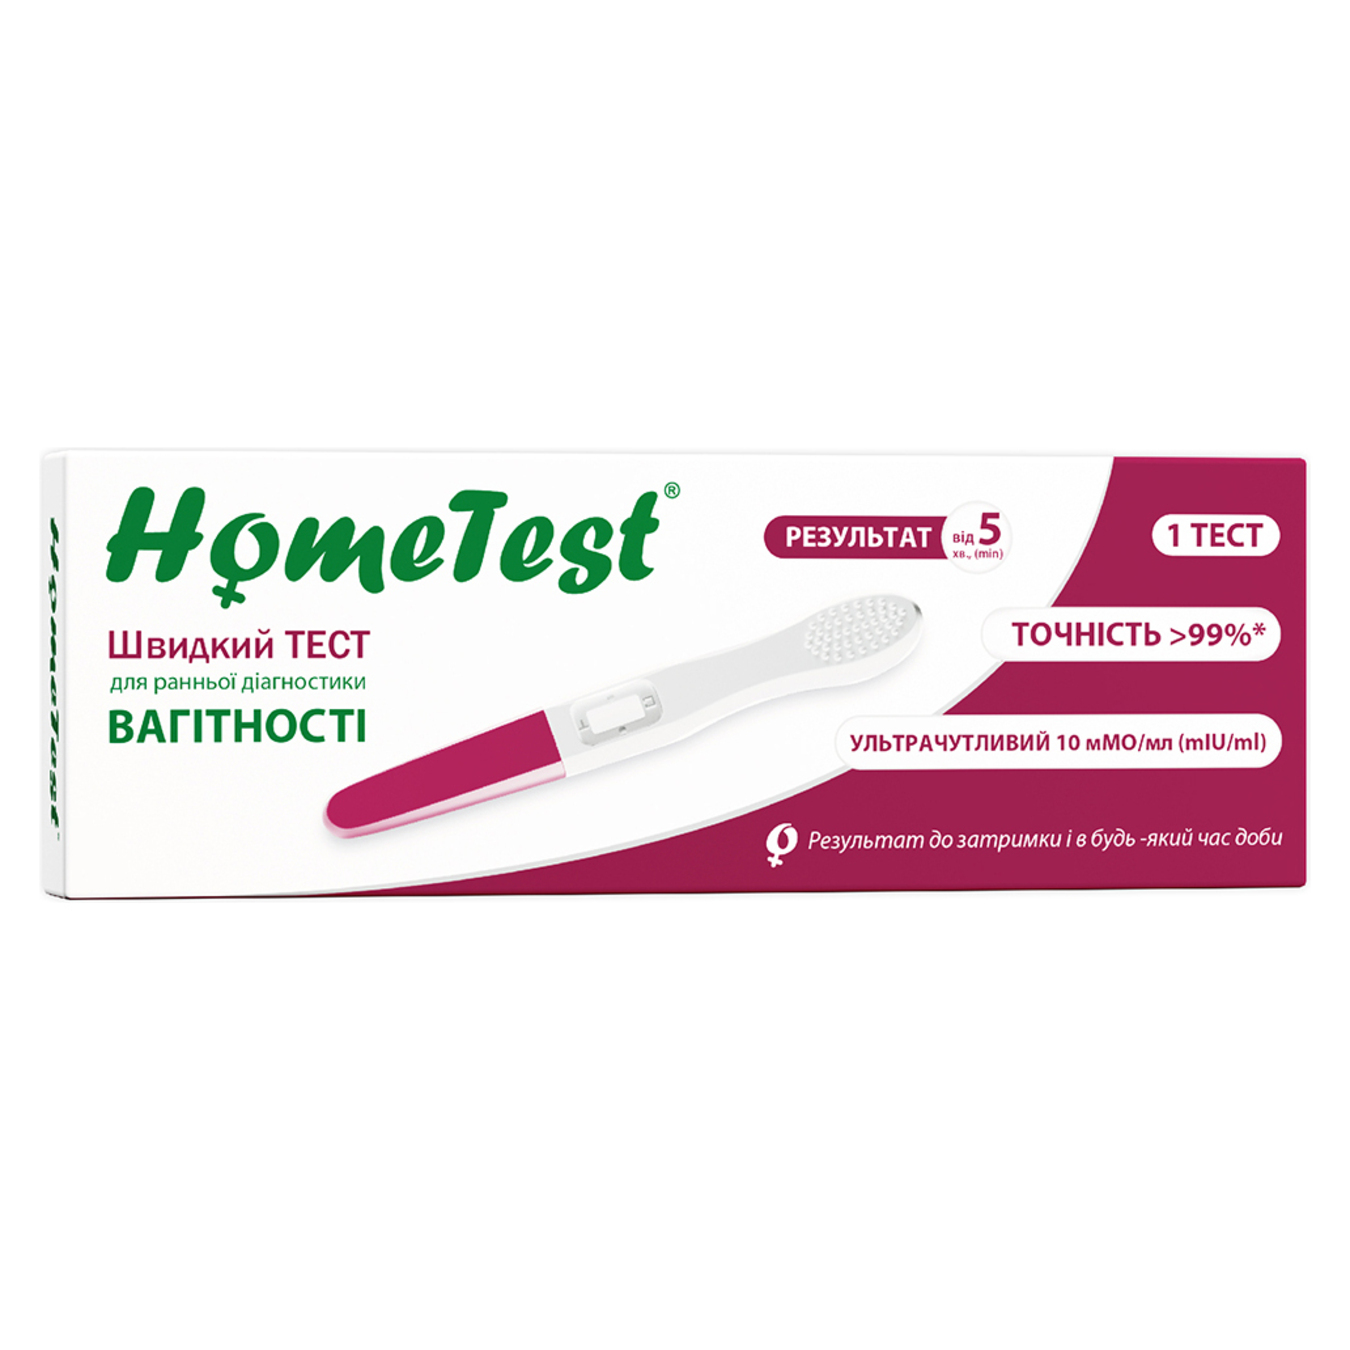 Тест HomeTest струменевий для ранньої діагностики вагітності 1 шт в упаковці